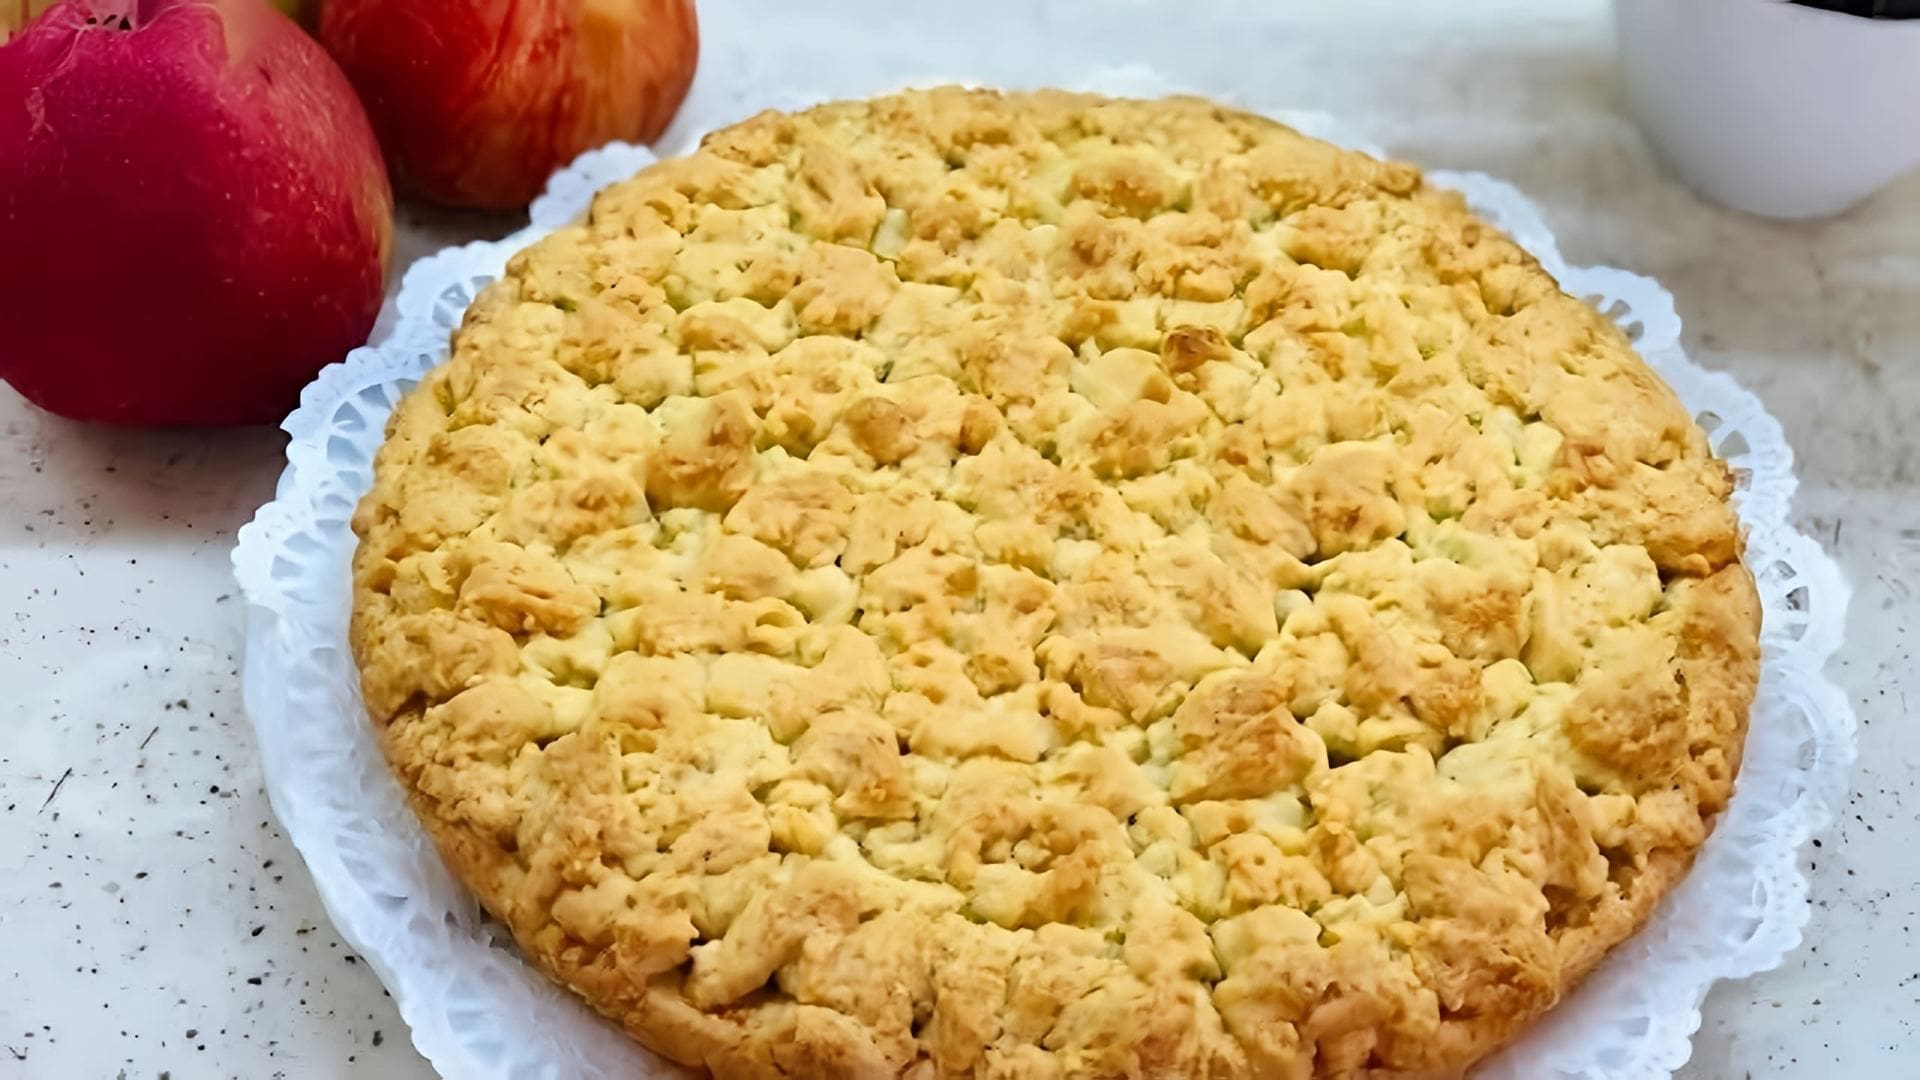 В этом видео демонстрируется процесс приготовления песочного пирога с яблочной начинкой